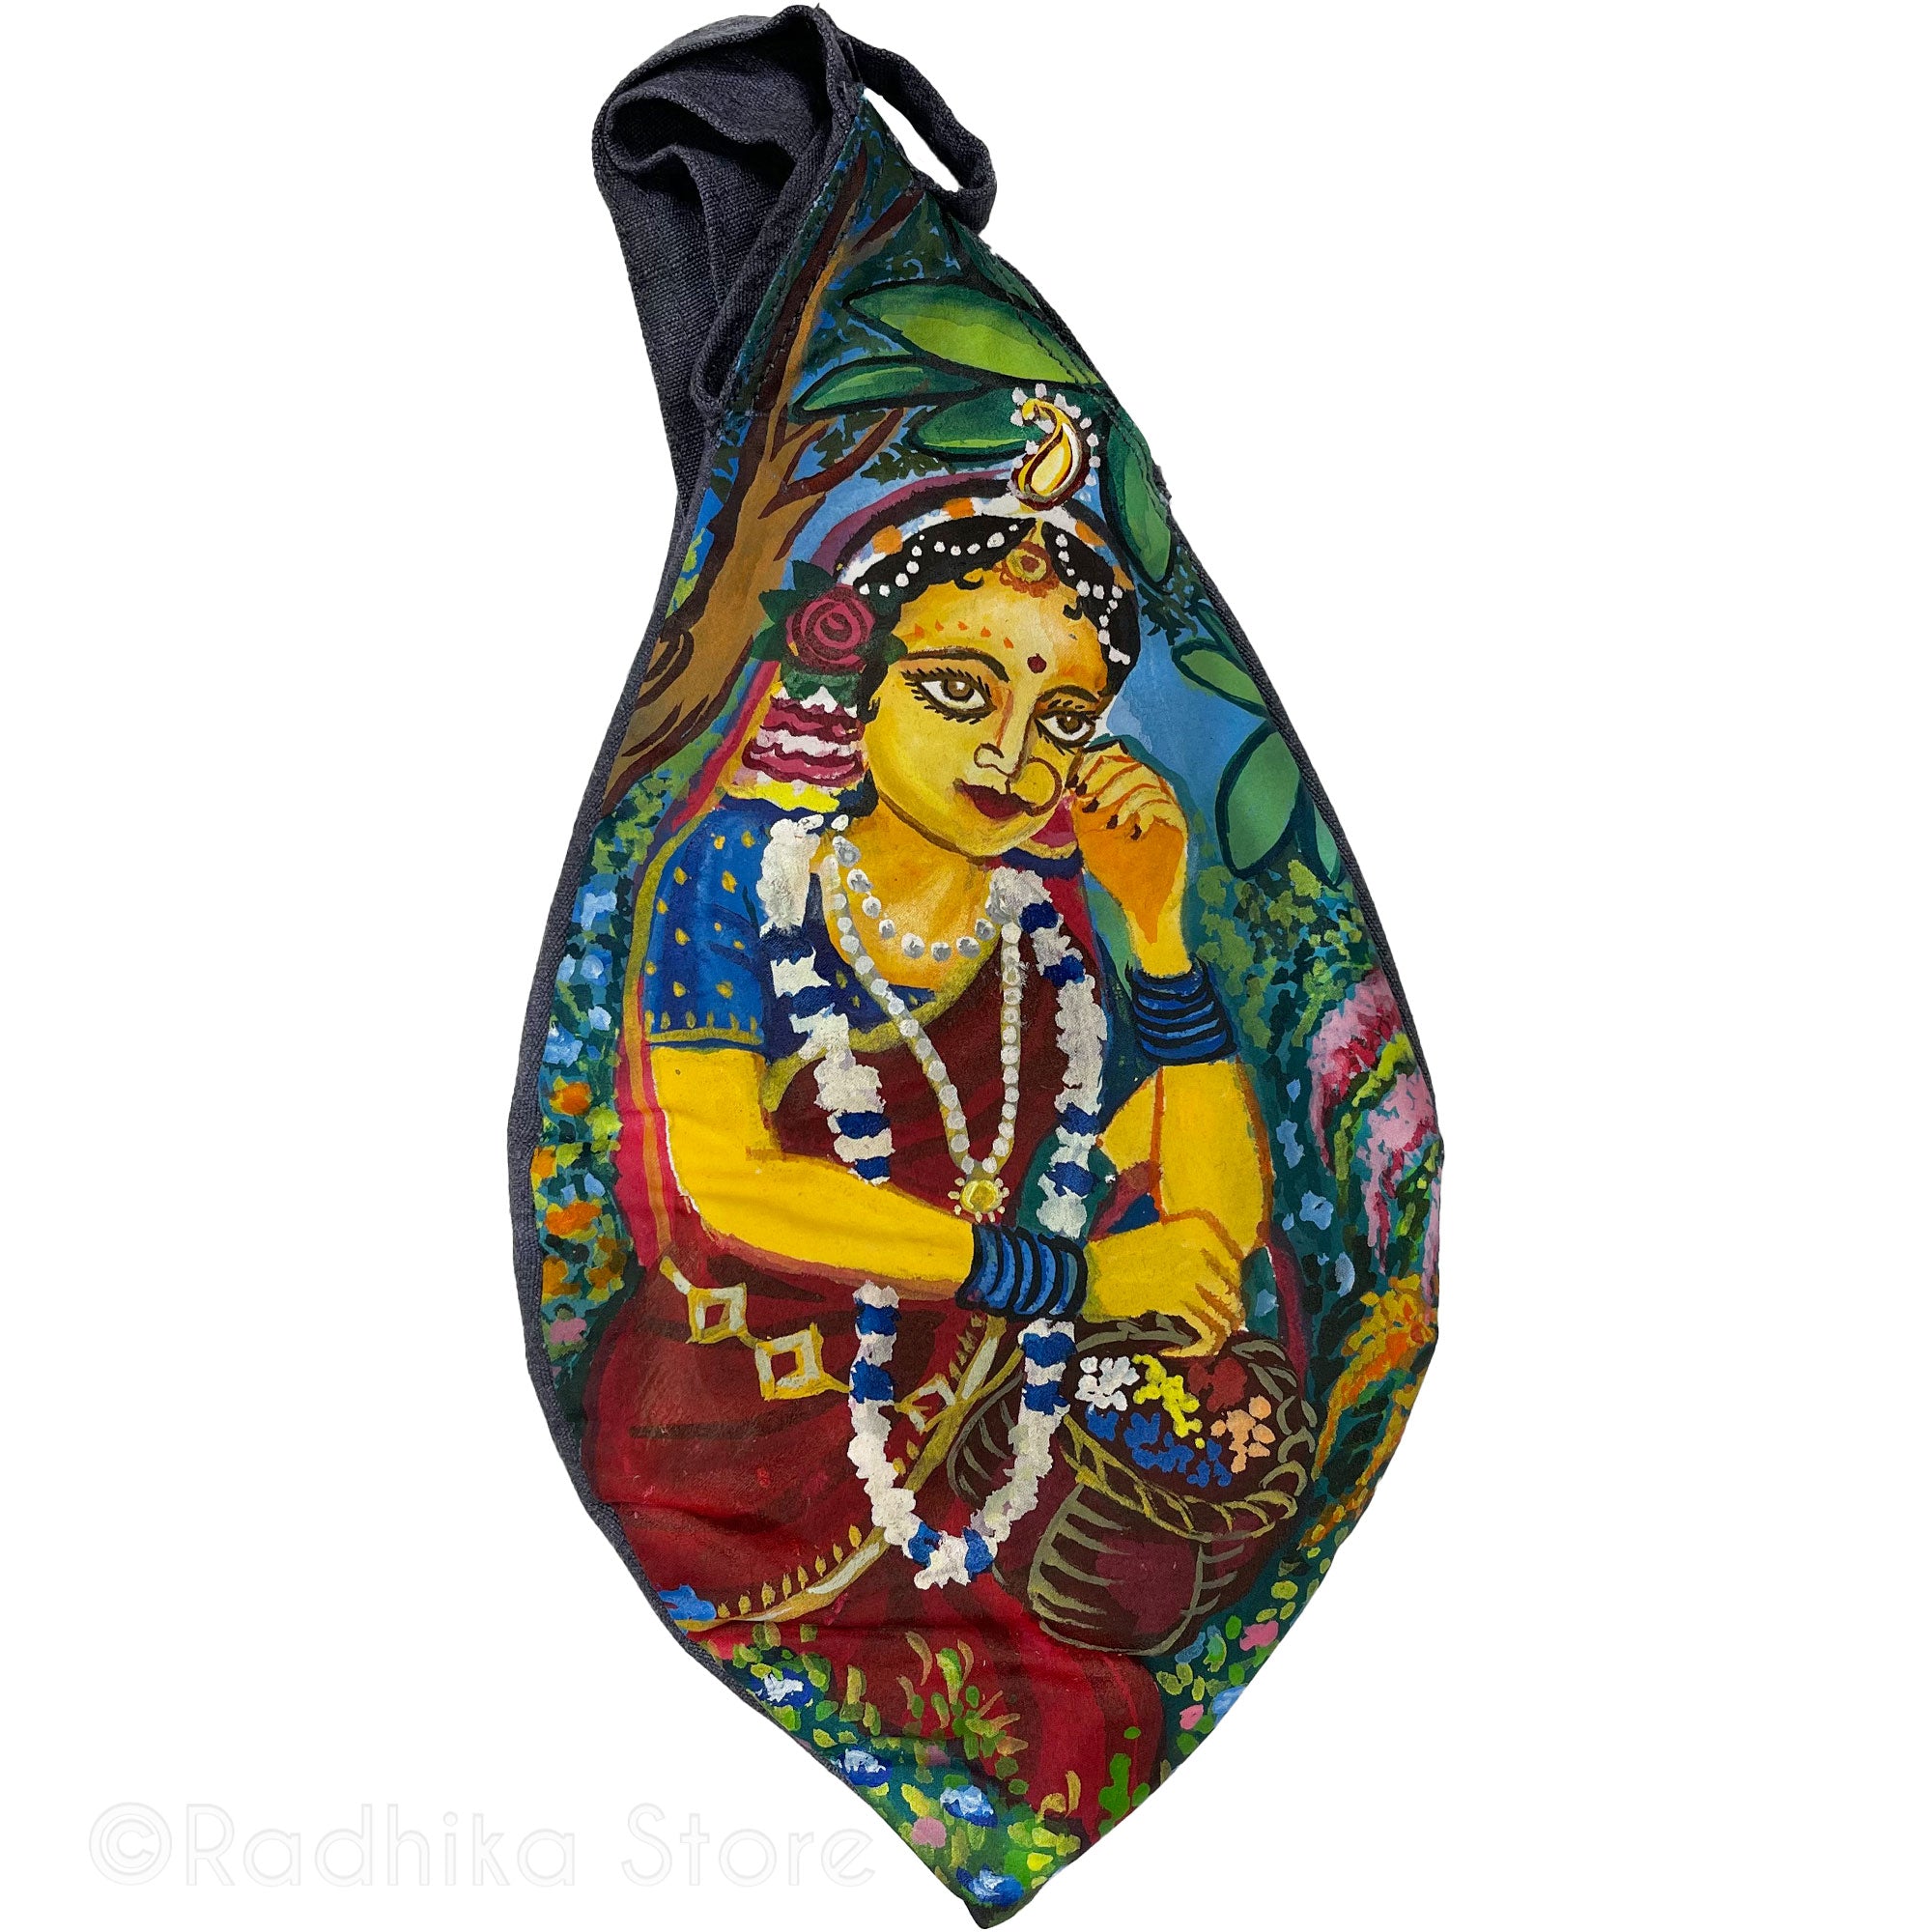 Radhika Flower Garden - Hand Painted Bead Bag